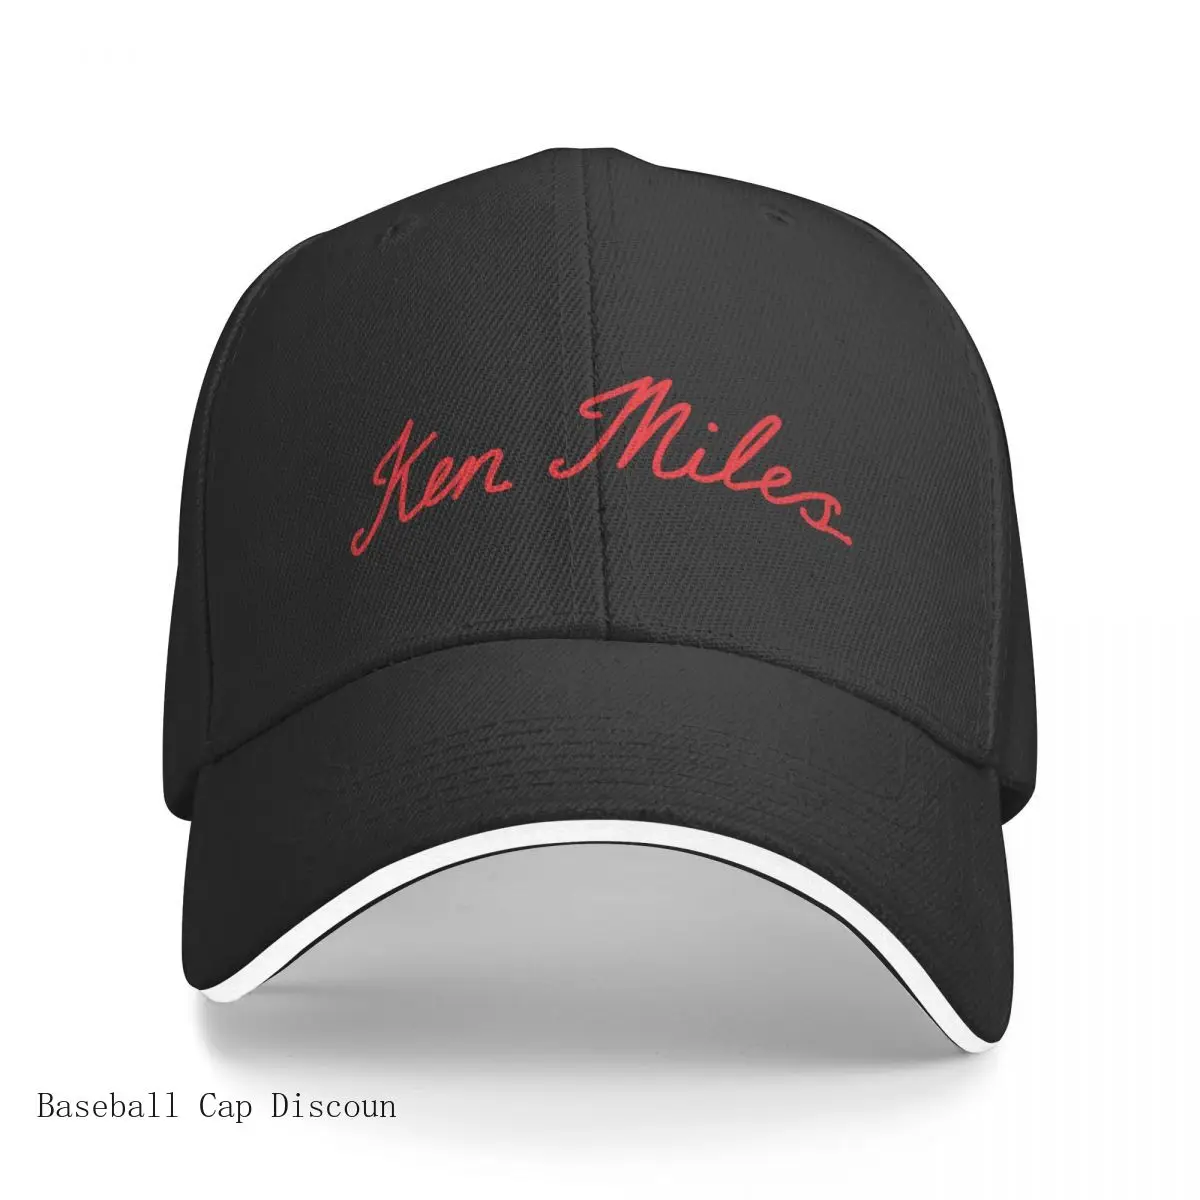 

New Ken Miles Cap Baseball Cap Beach Outing Bobble Hat Baseball Cap |-f-| Golf Wear Men Women's